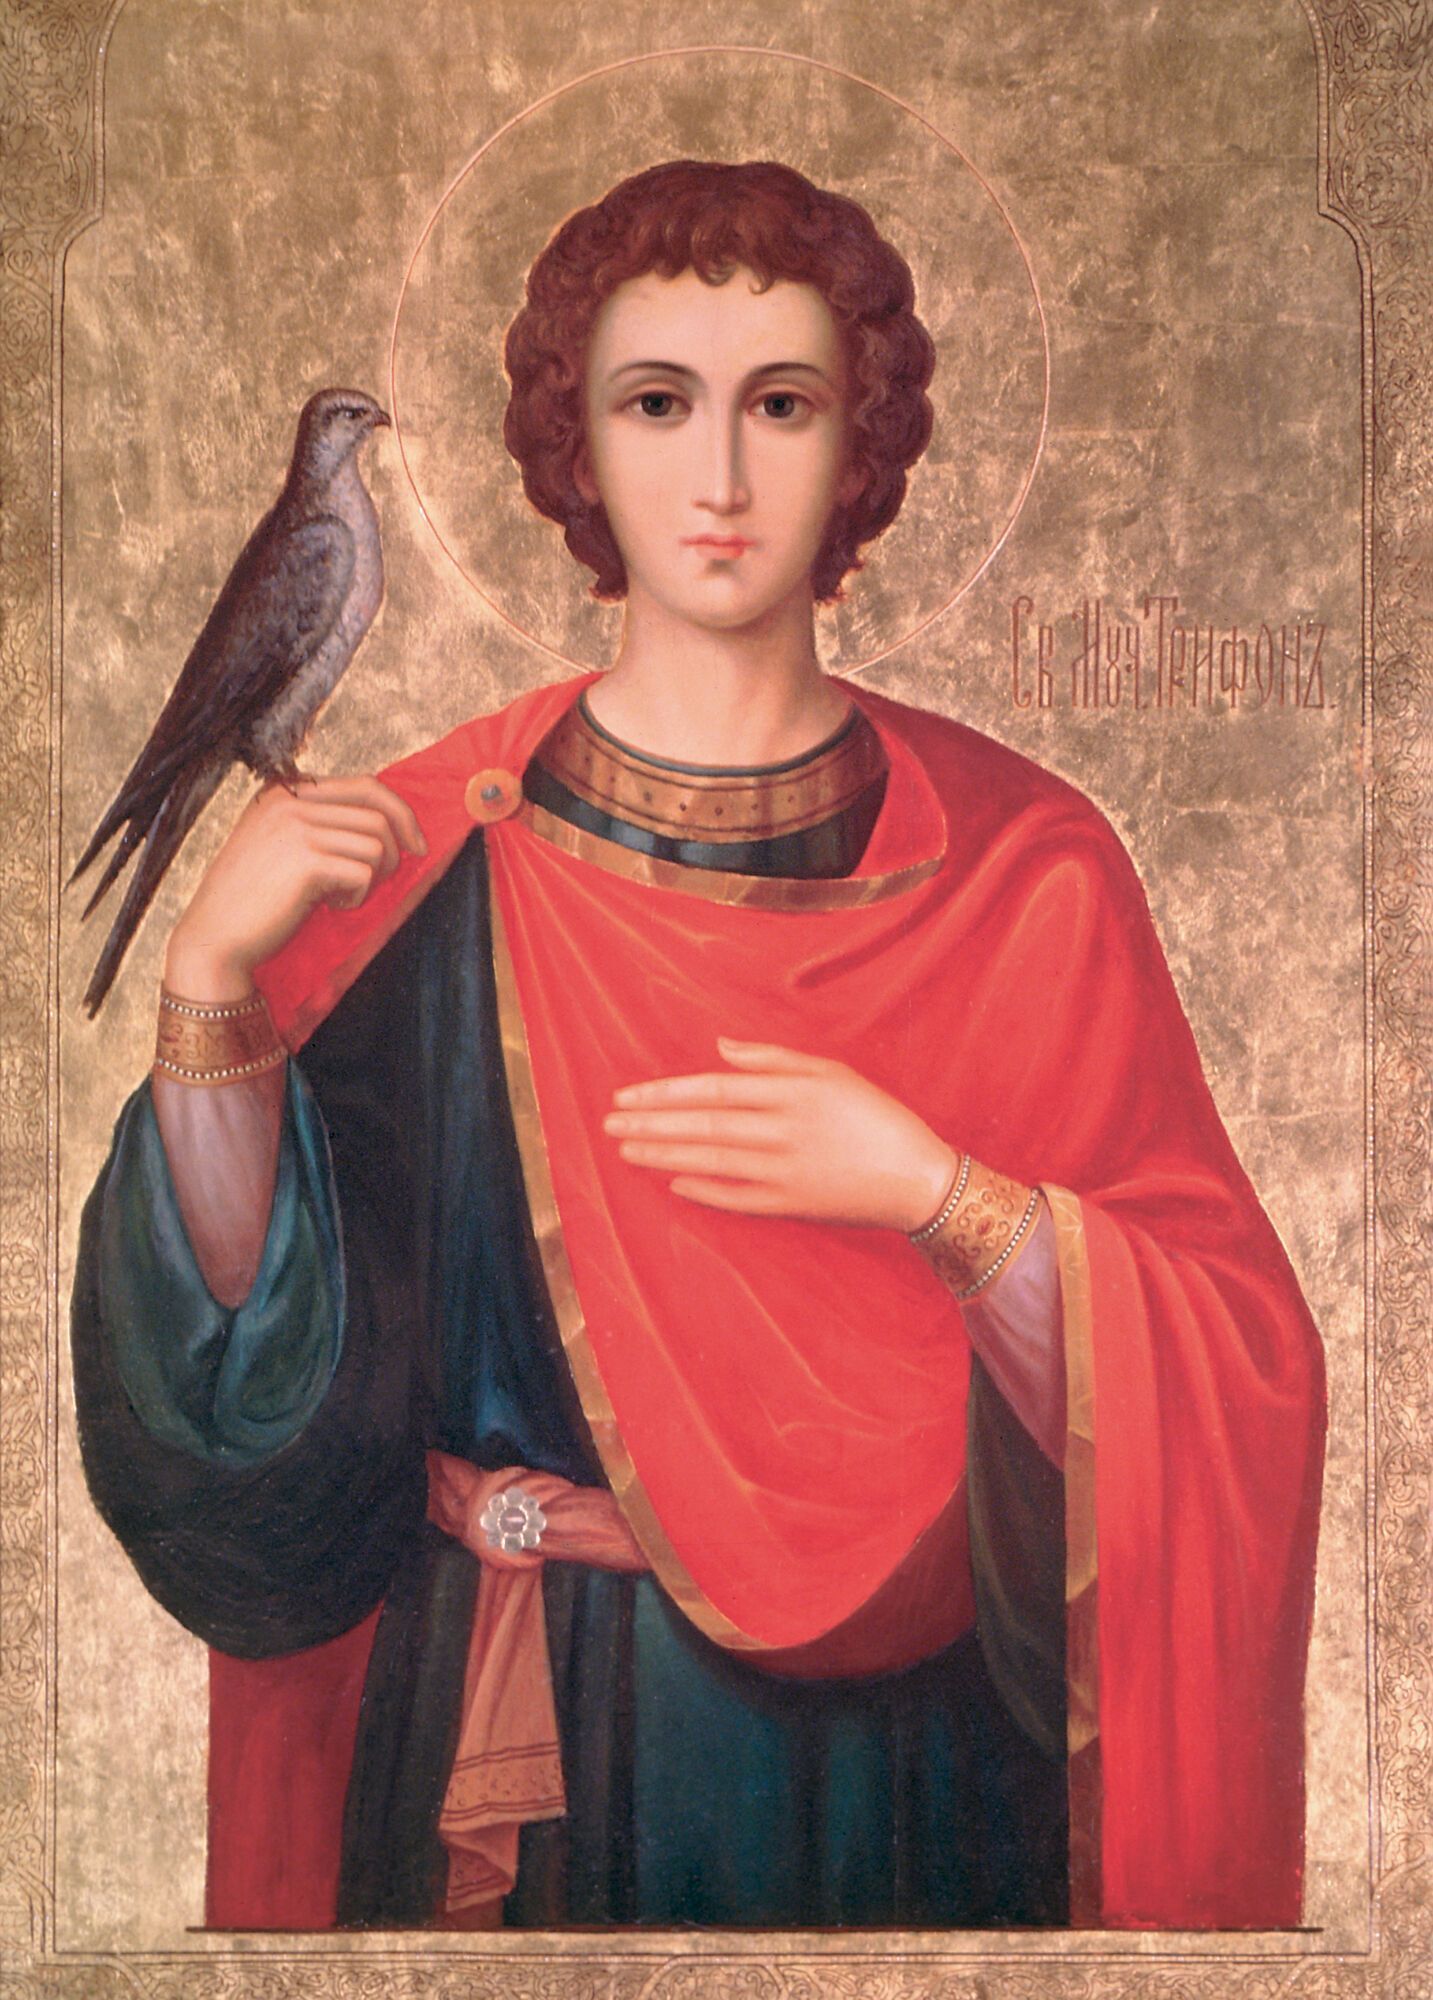 Икона мученика Трифона, память которого почитают 14 февраля в православной церкви